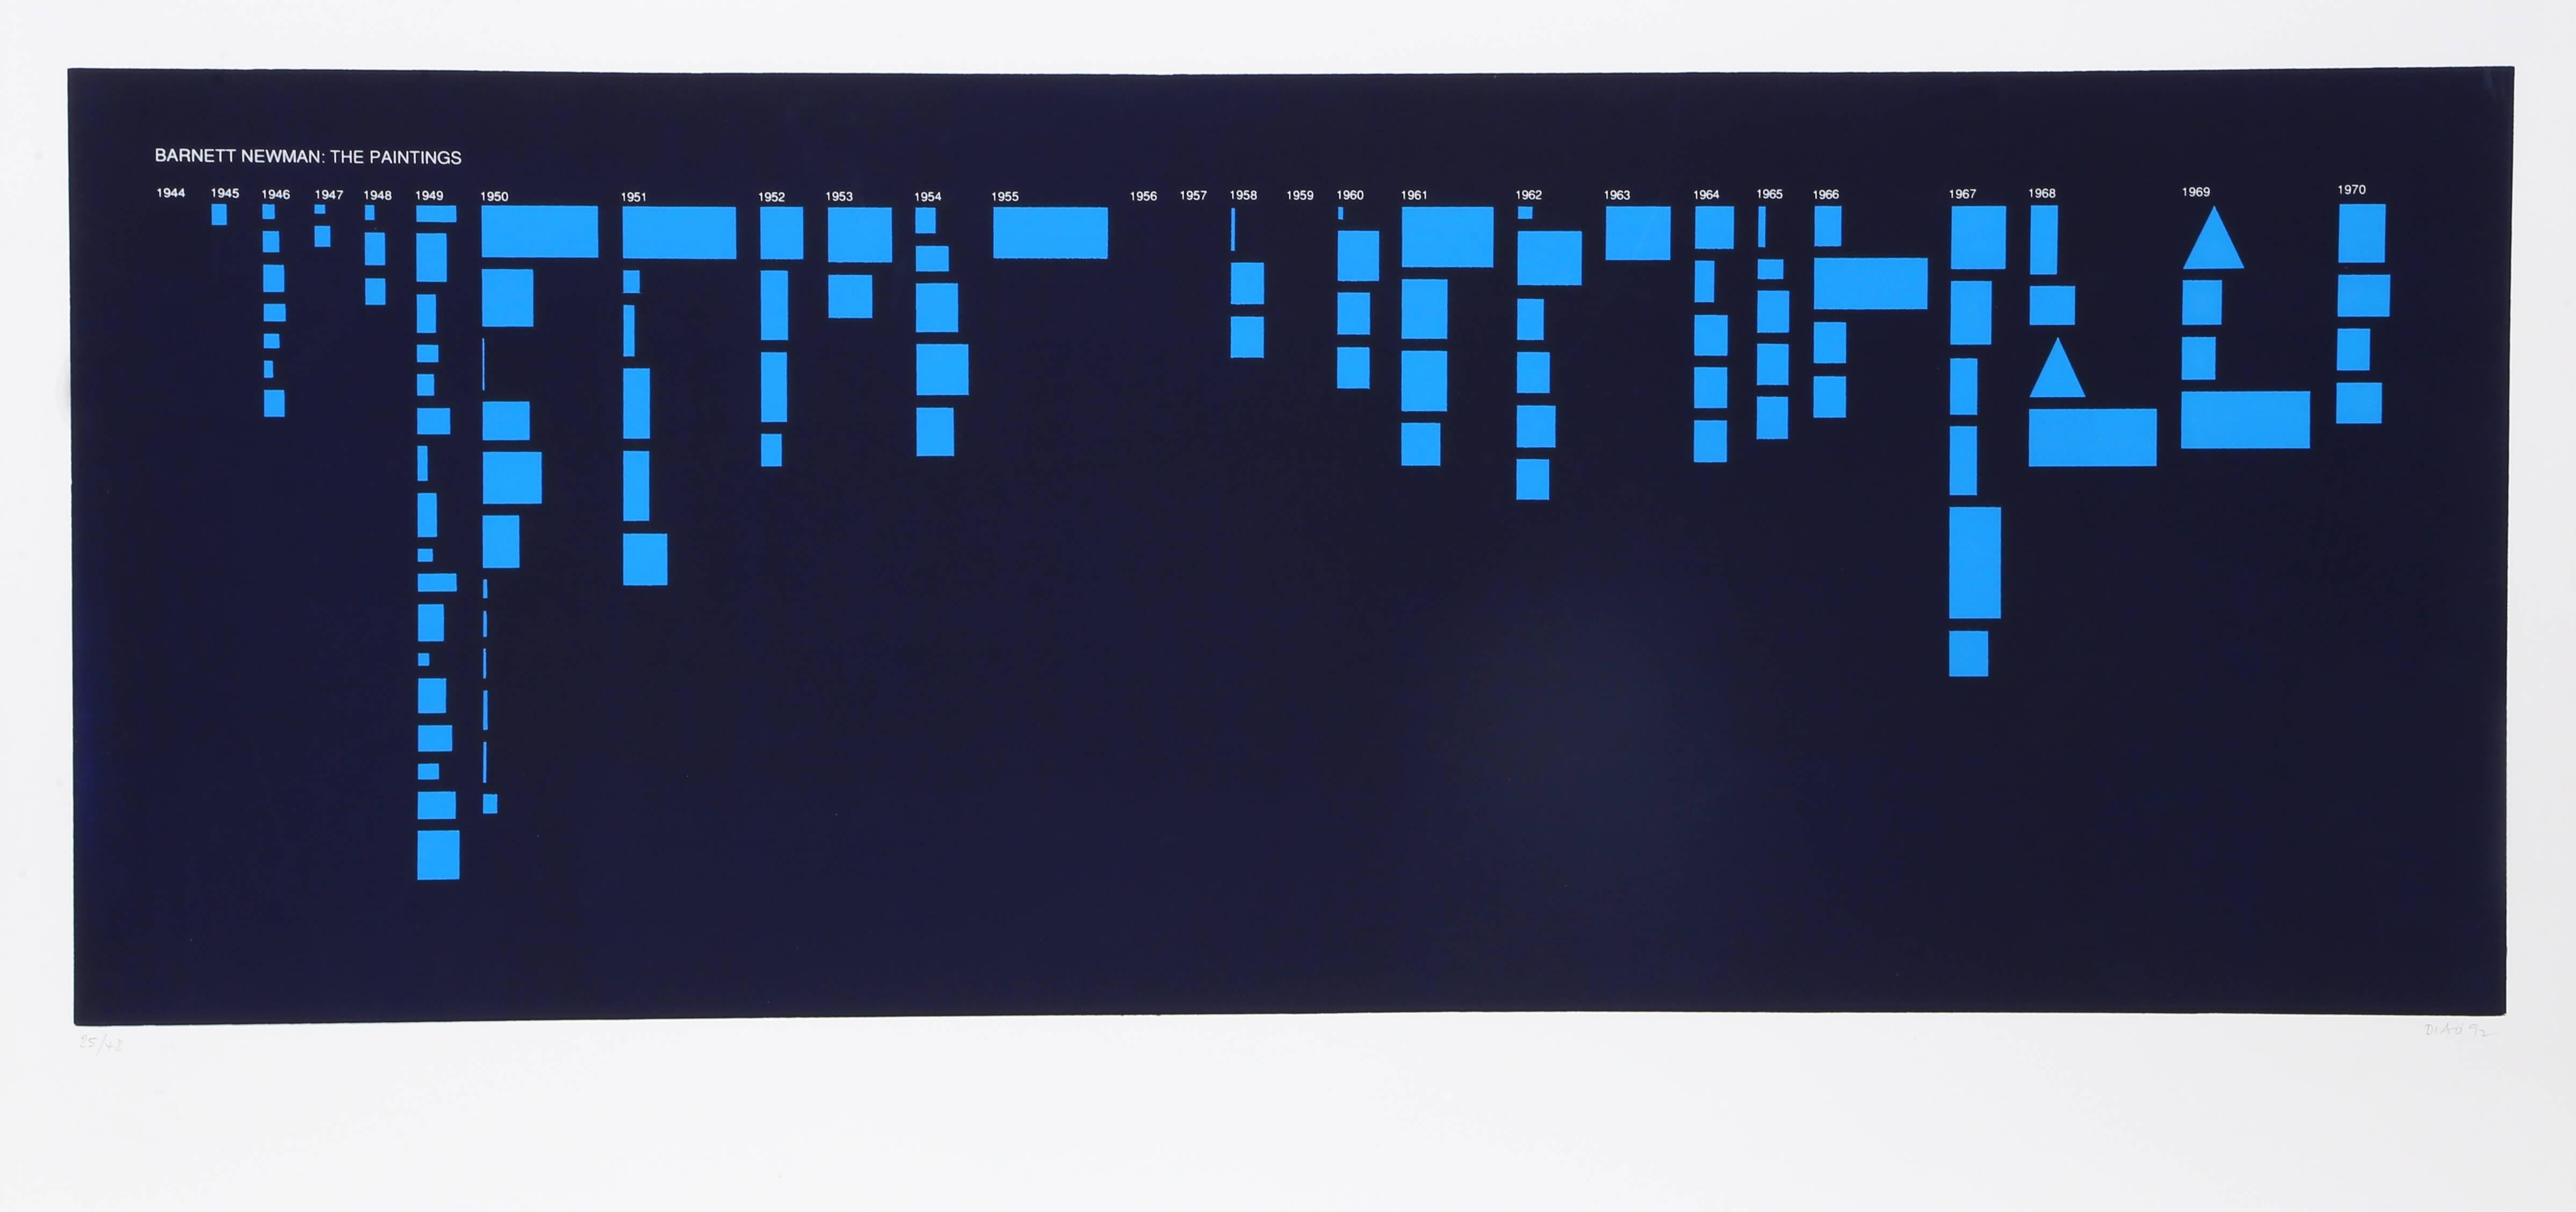 Künstler: David Diao, chinesisch-amerikanischer Künstler (1943-)
Titel: Barnett Newman: Die Gemälde (Blau)
Jahr: 1992
Medium: Siebdruck, signiert und nummeriert mit Bleistift
Bild: 15 x 39 Zoll
Größe: 30  x 42 Zoll (76,2  x 106.68 cm)